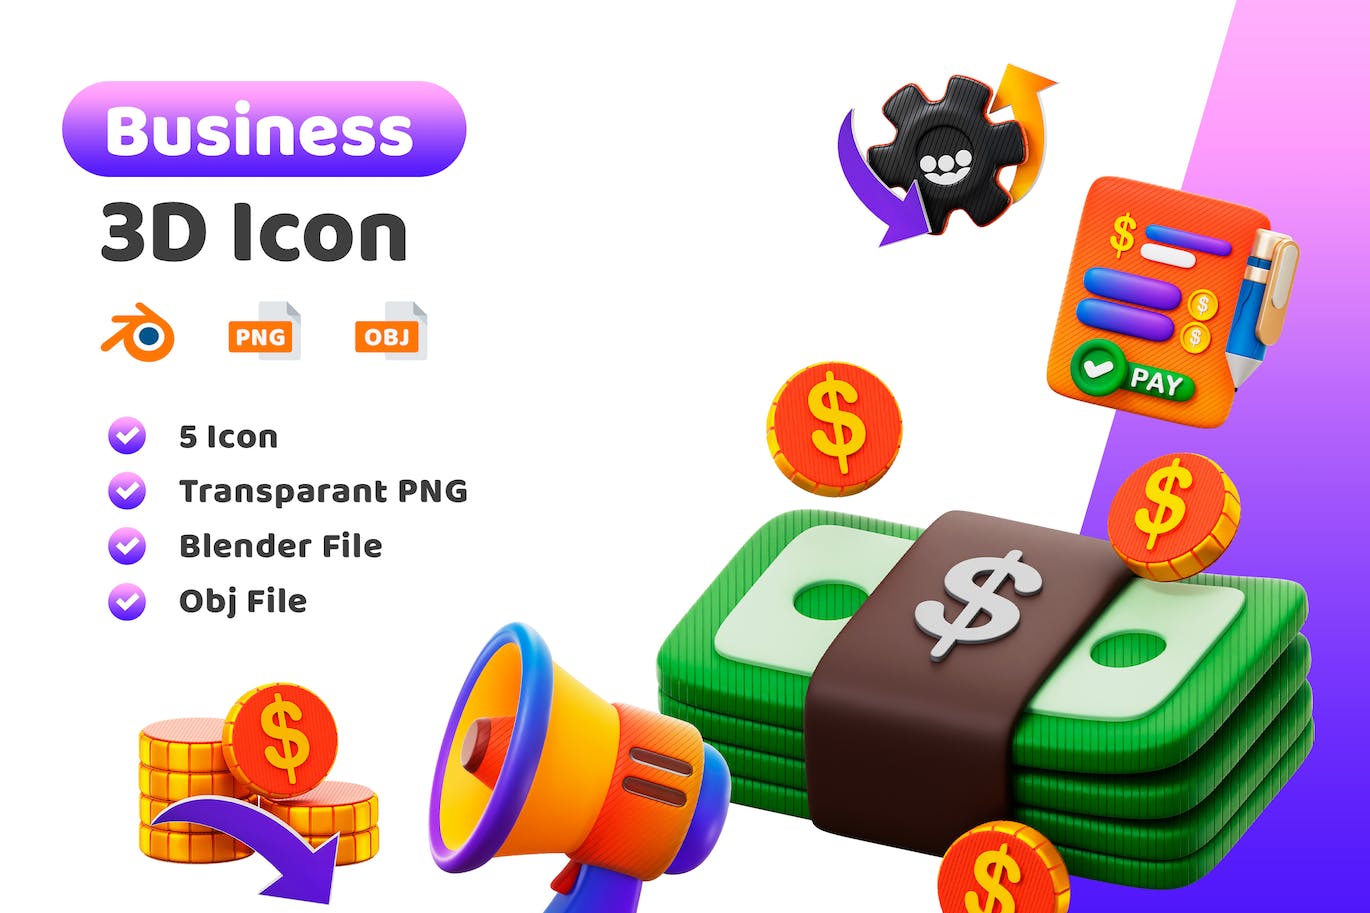 商业金融元素3D图标 Business 3D Icon 图标素材 第1张